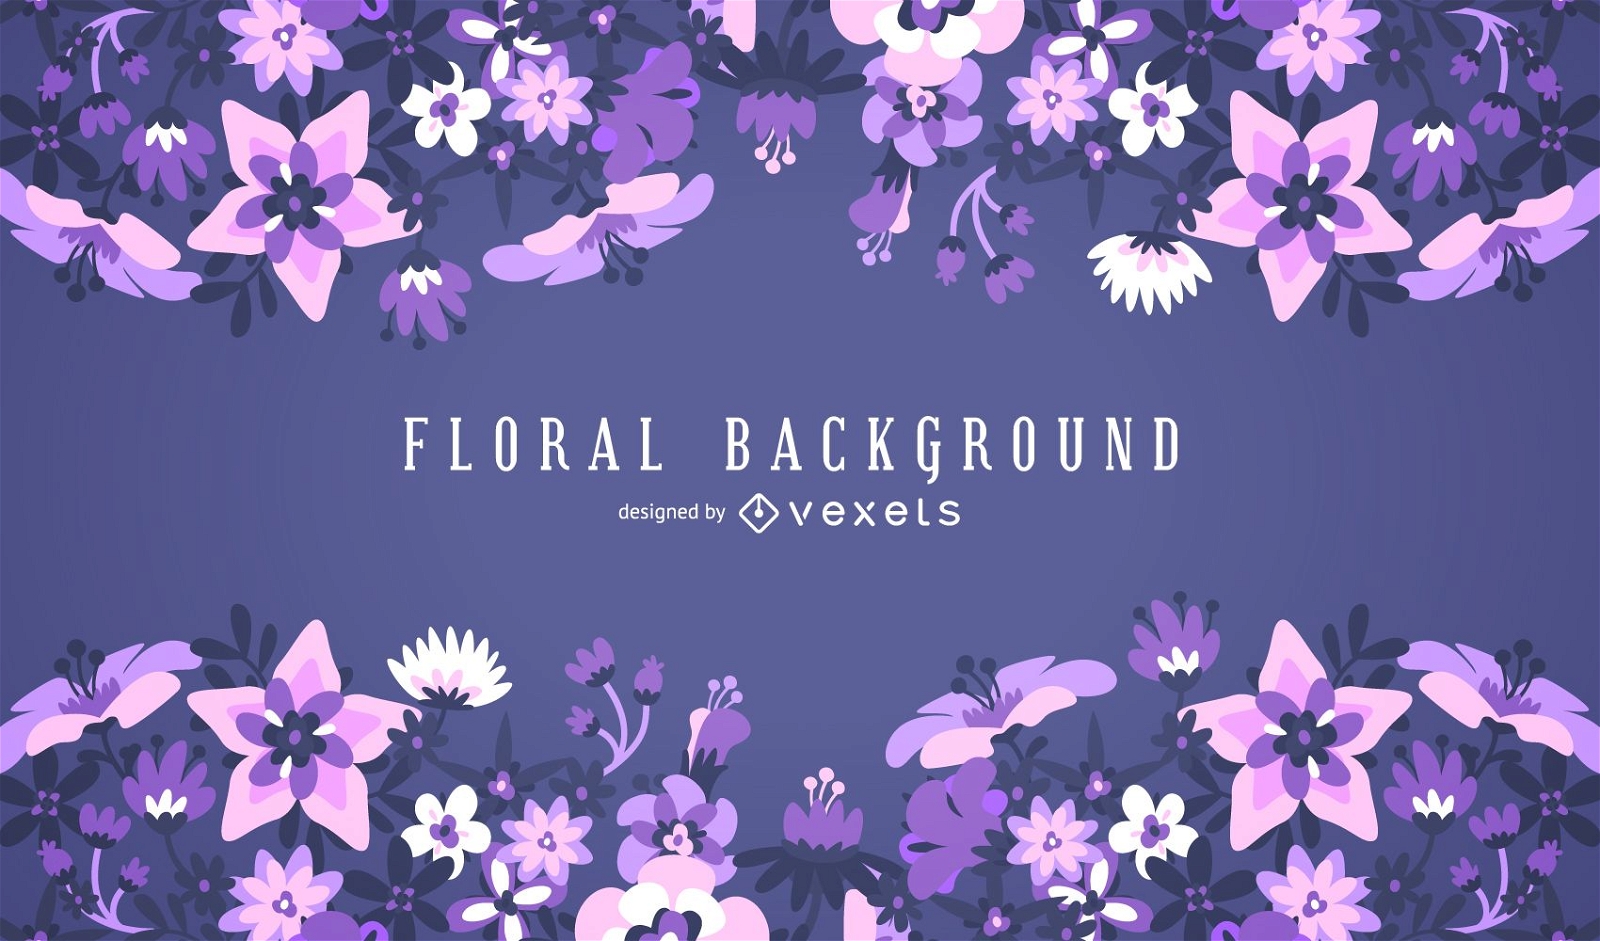 Purple floral background frame